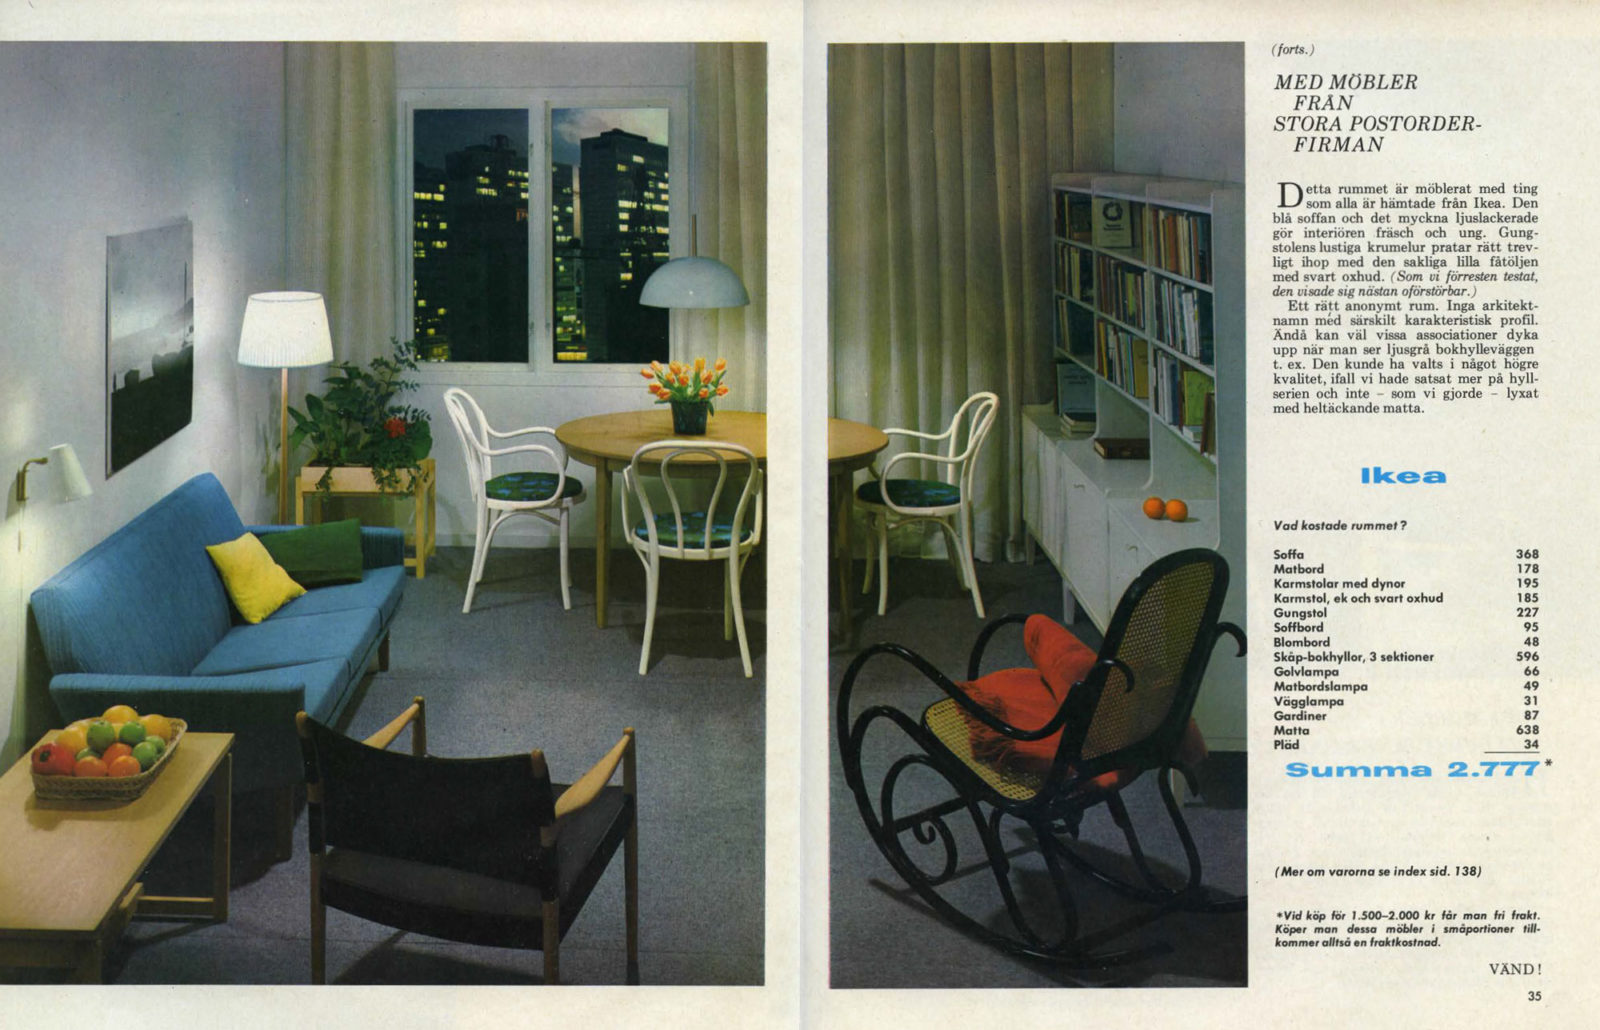 Photo de magazine, salon années 1960, texte sur choix et tests de « meubles de la société de vente par correspondance » IKEA.